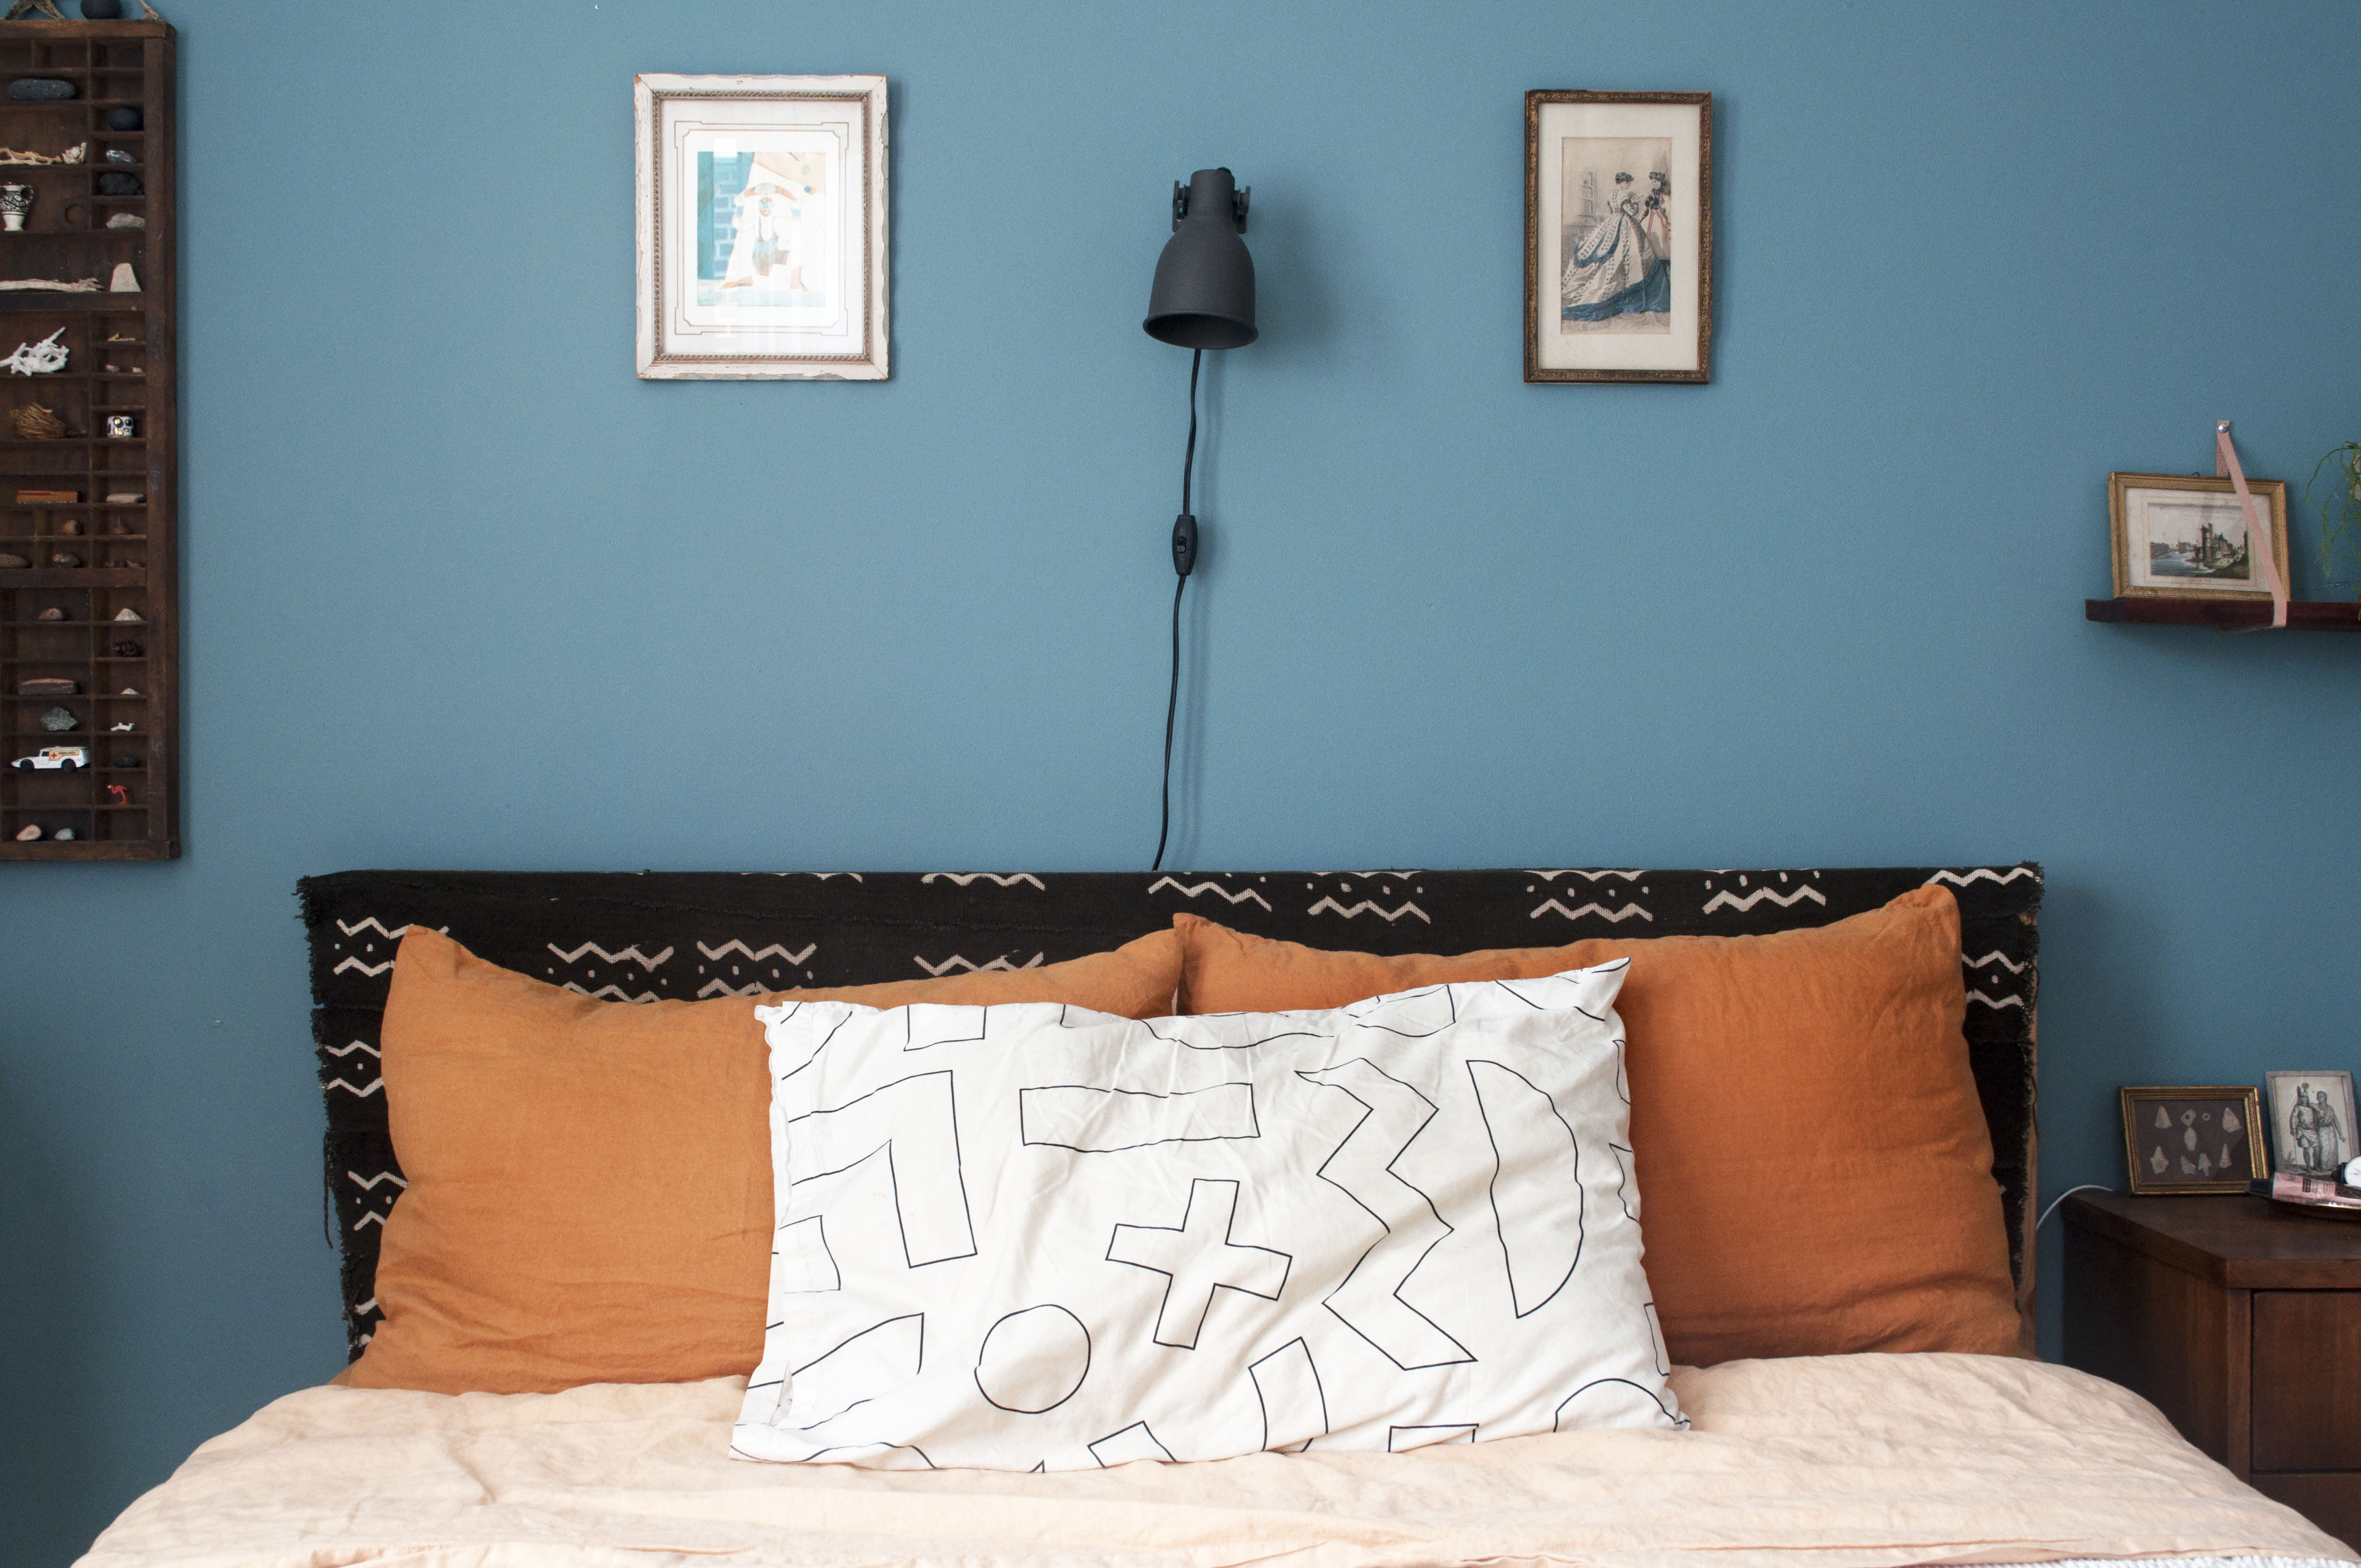 aqua blue bedroom walls color combinations